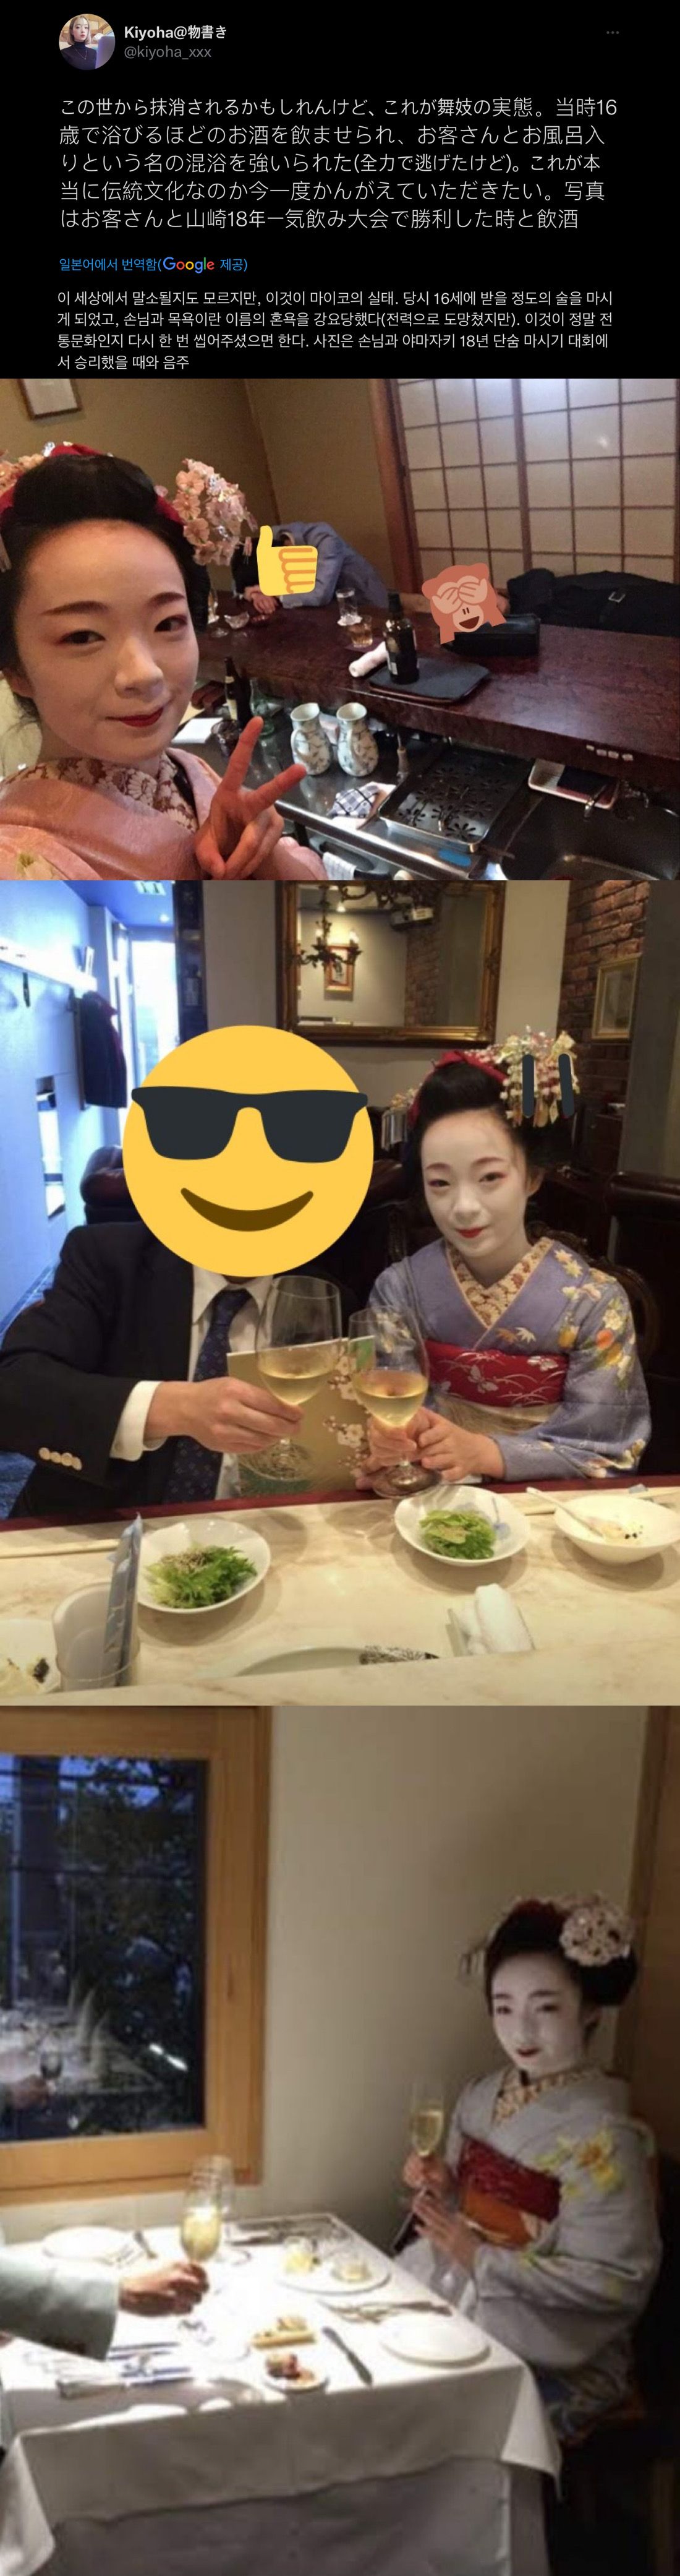 [유머] 일본의 어느 전통 문화 -  와이드섬